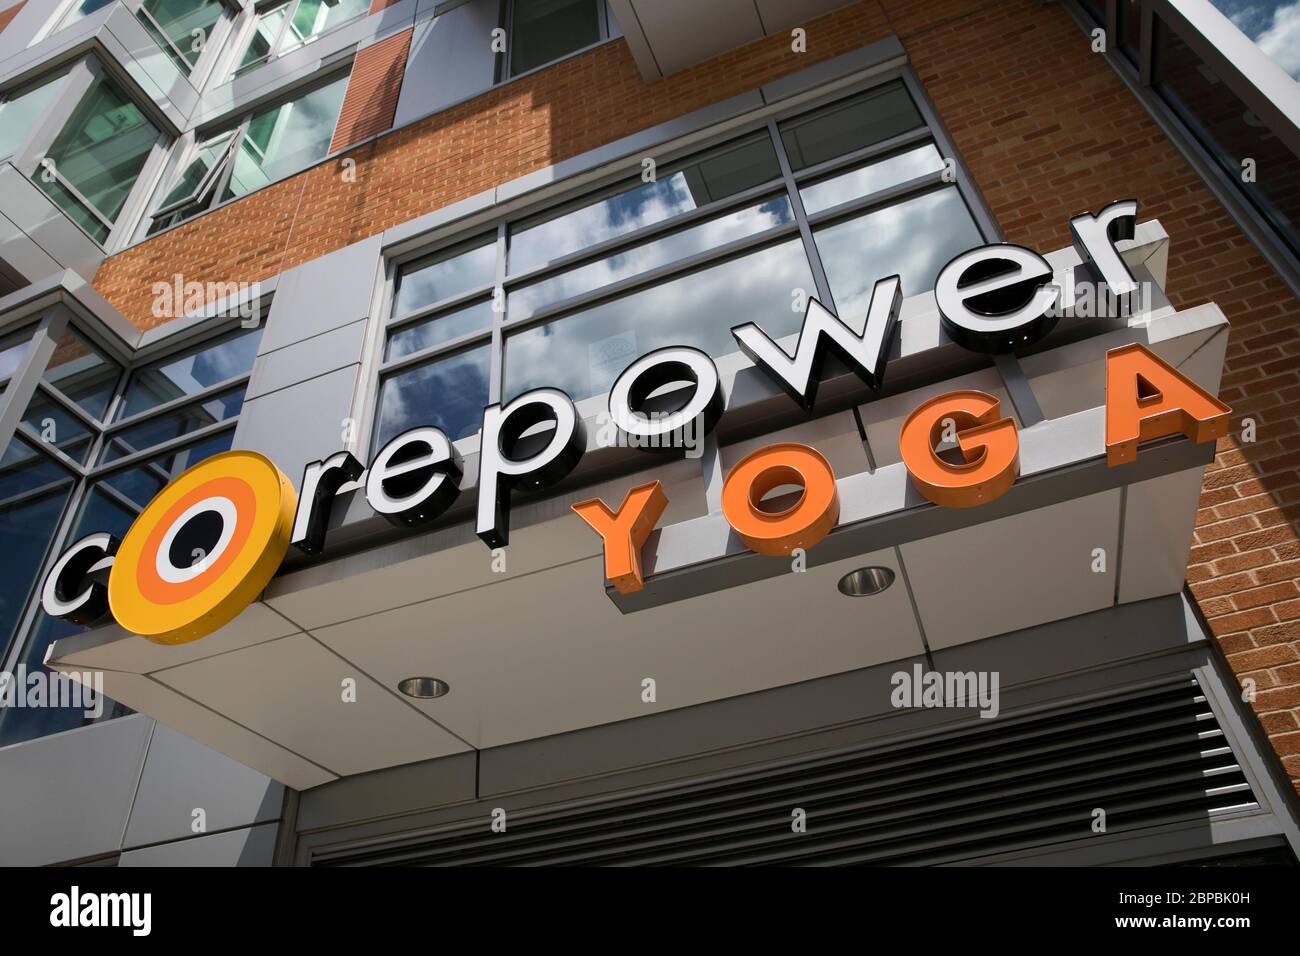 Un logo à l'extérieur d'un emplacement CorePower Yoga à Washington, D.C., le 9 mai 2020. Banque D'Images